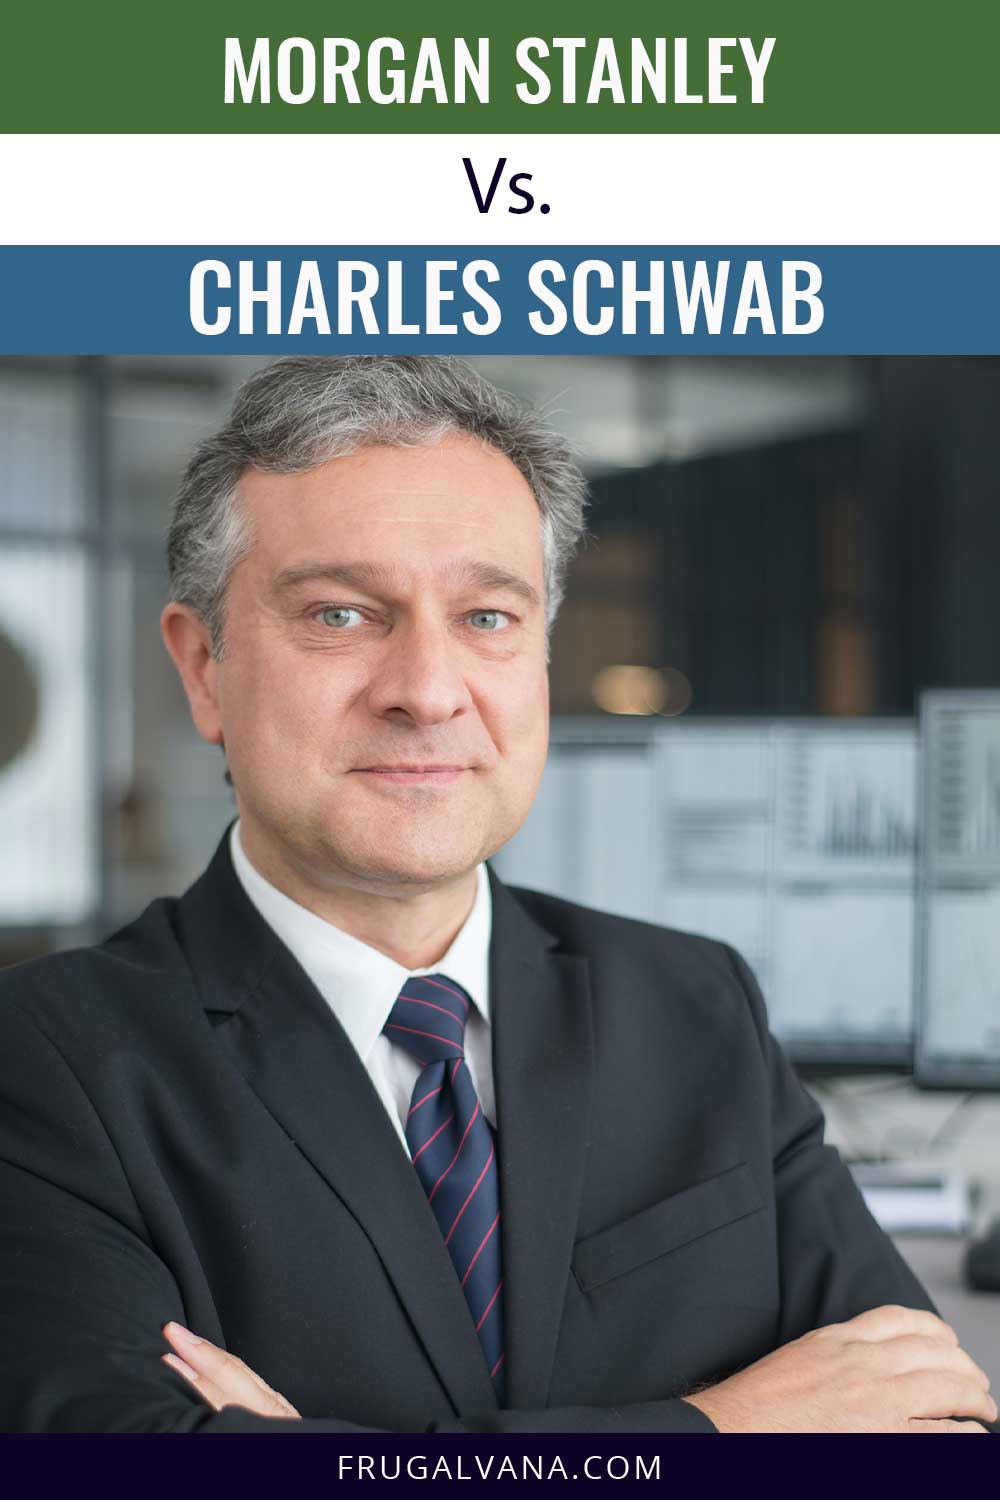 Morgan Stanley Vs. Charles Schwab